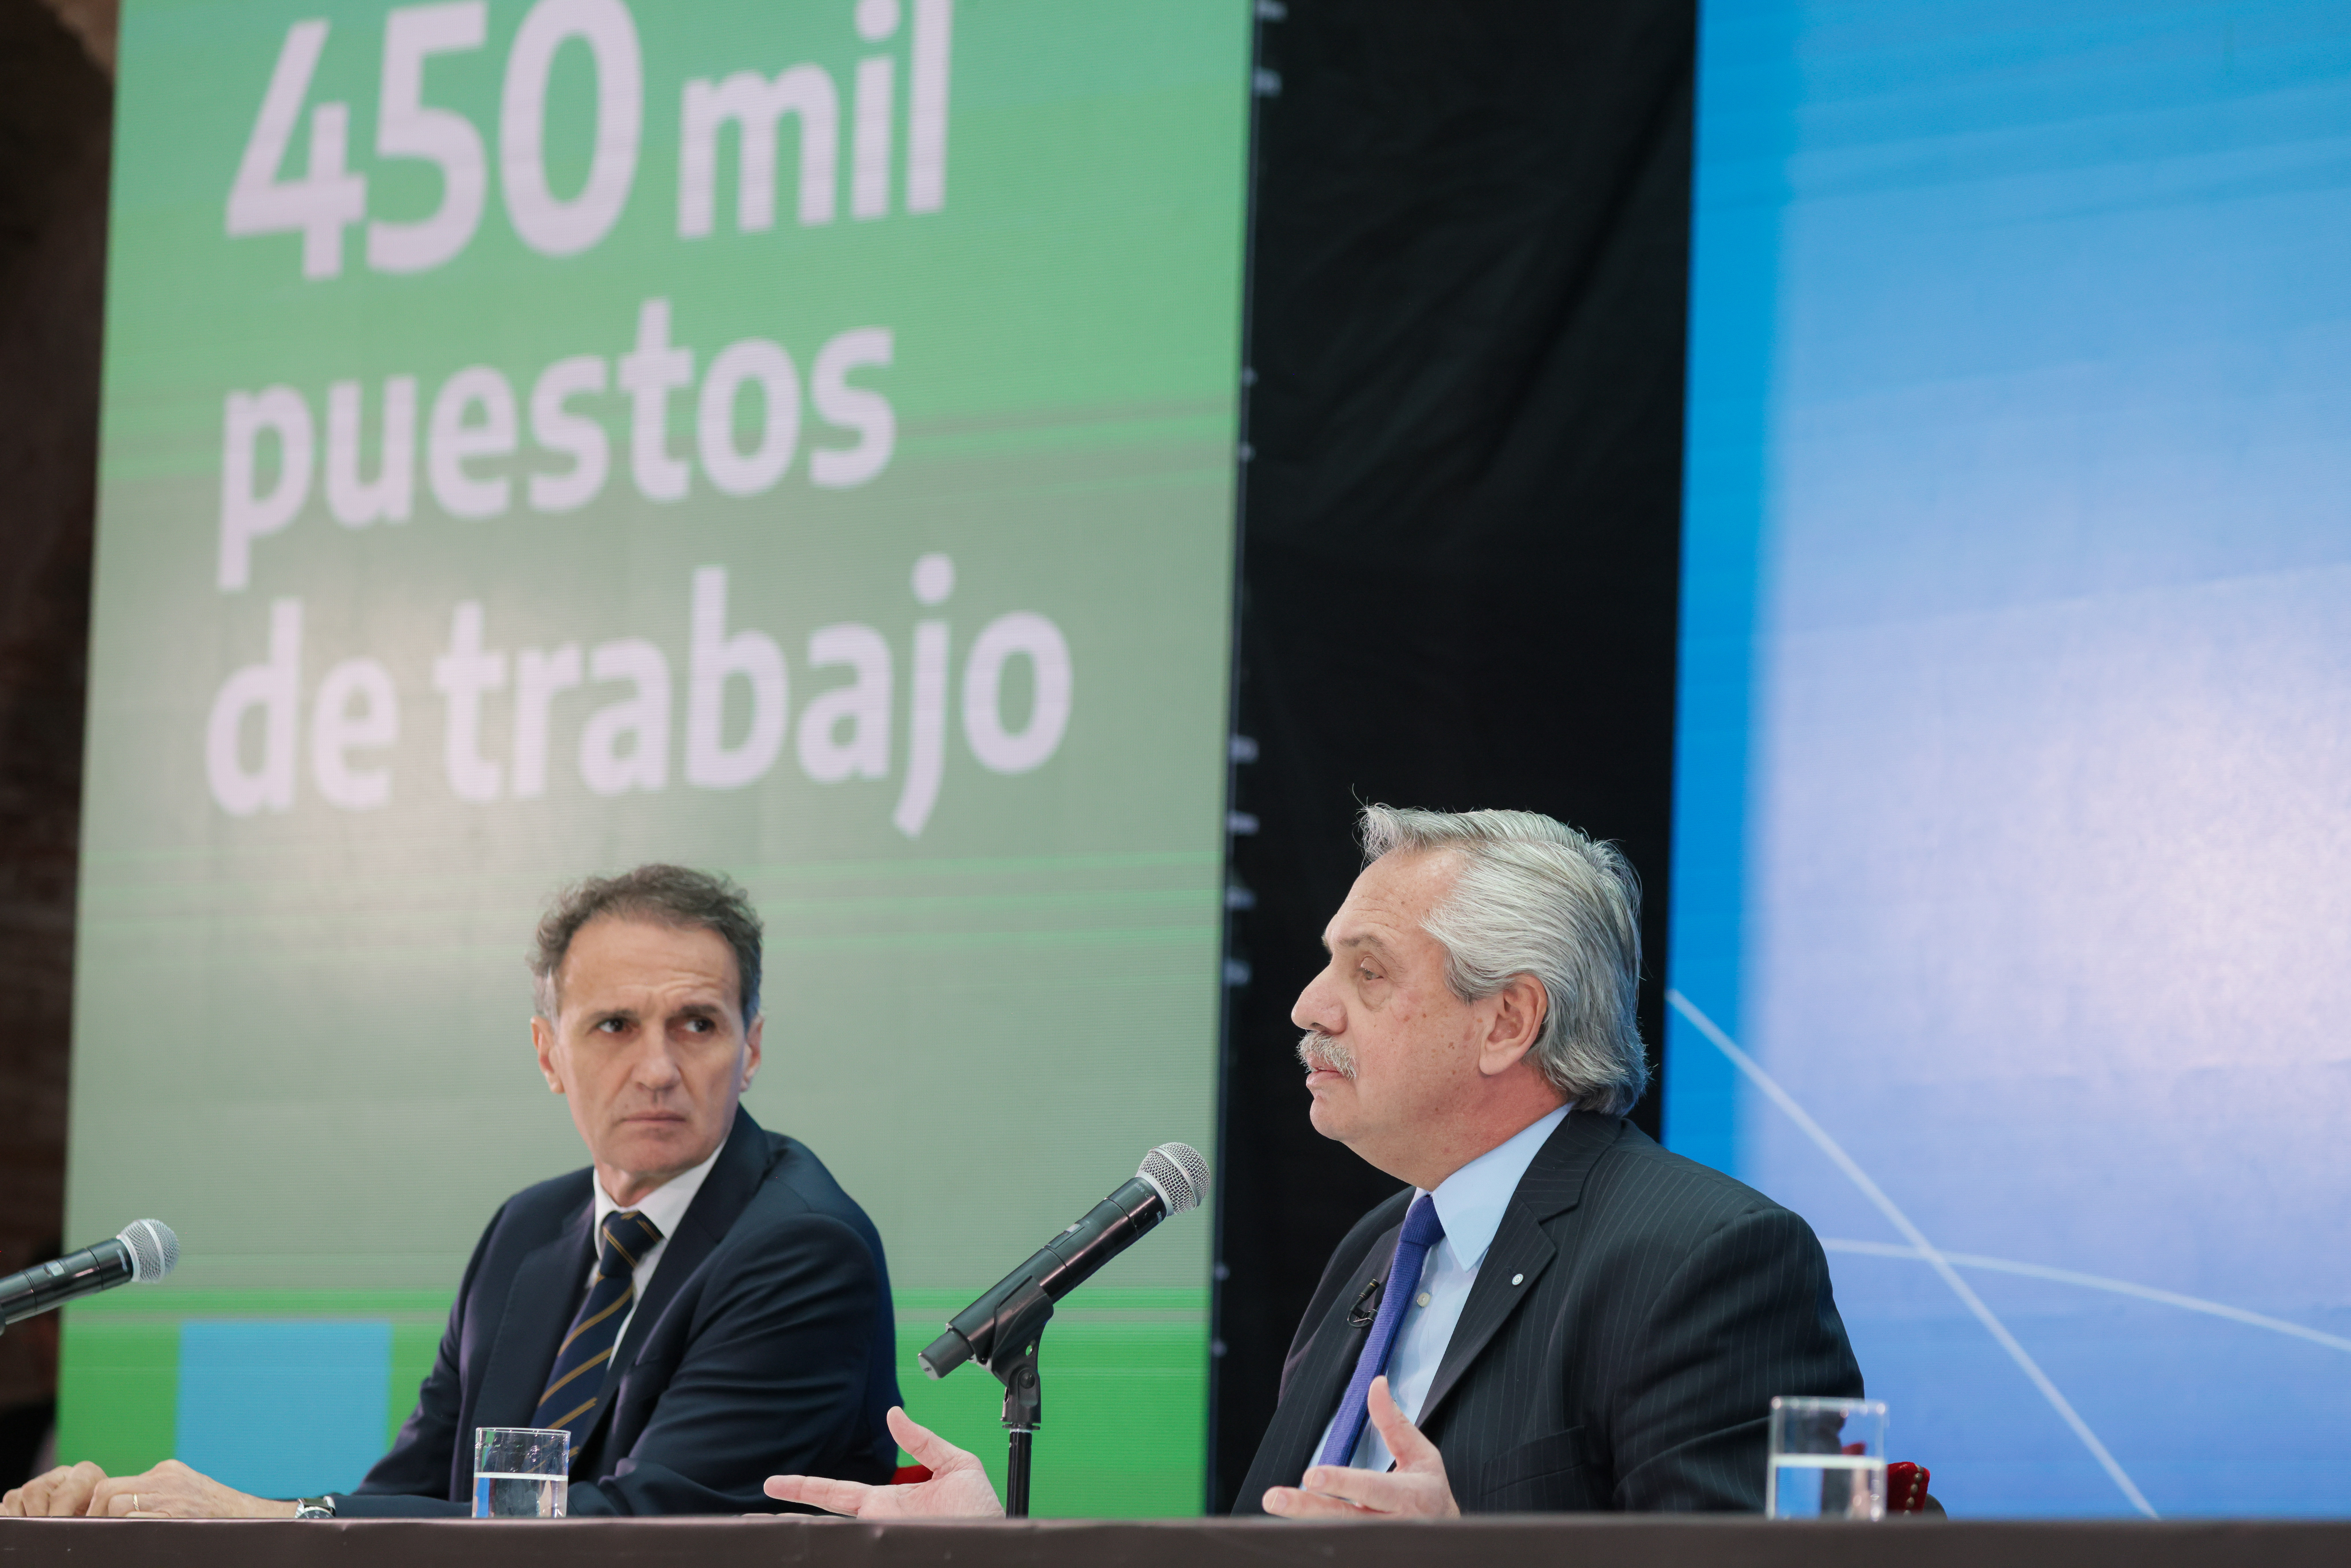 El presidente Fernández lanzó la nueva etapa del plan de obras públicas junto a Katopodis y Manzur, entre otros.